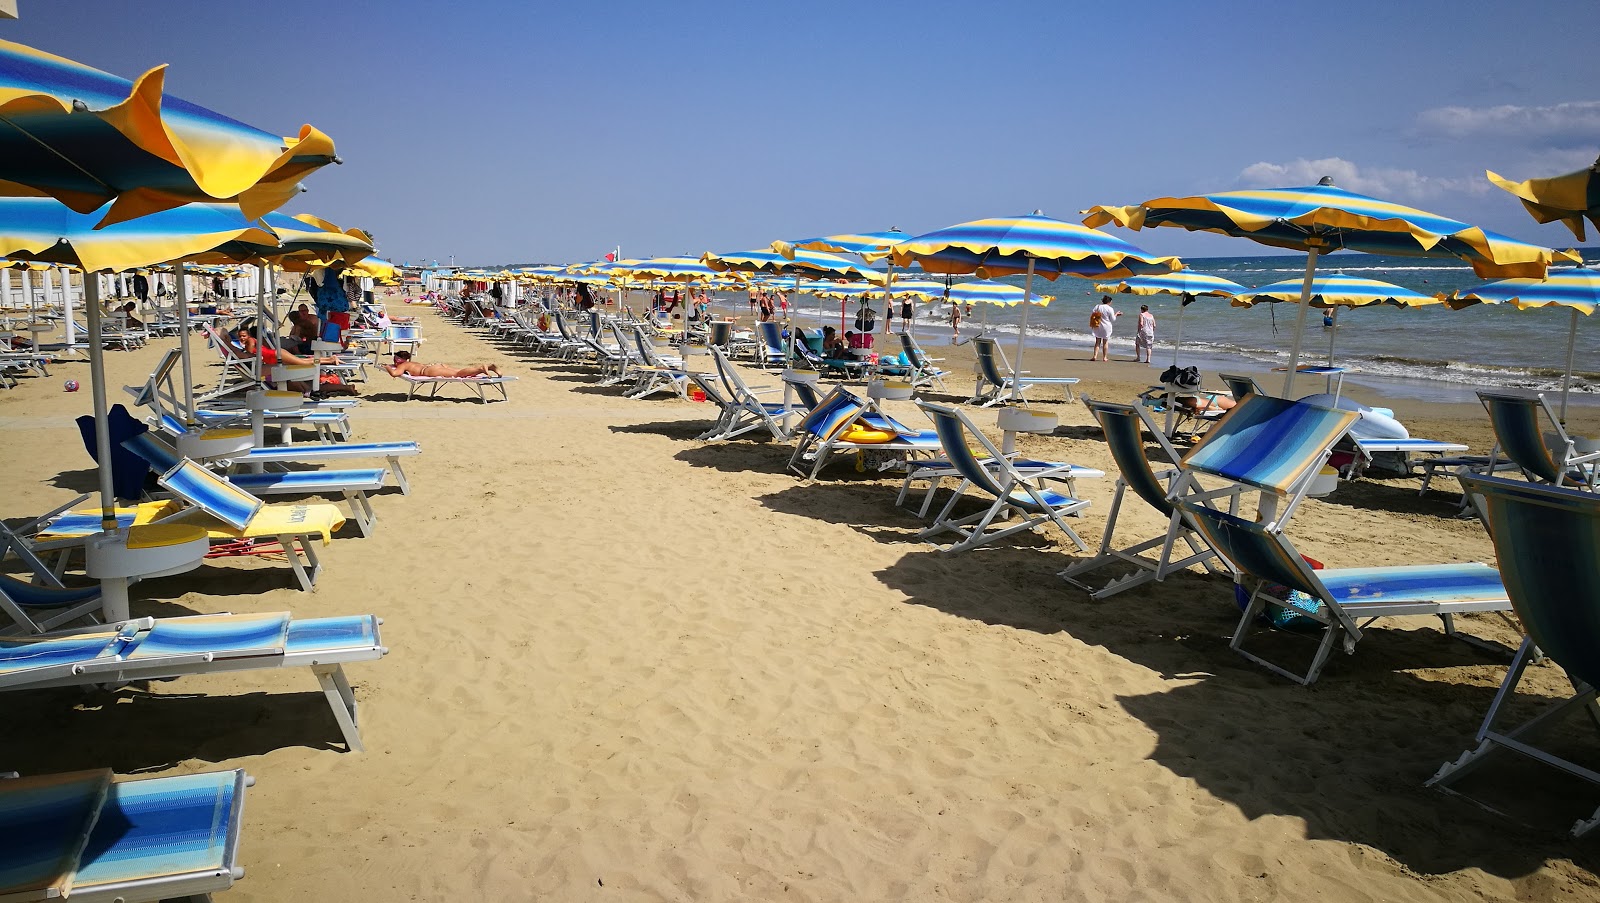 Zdjęcie Nettuno beach II - popularne miejsce wśród znawców relaksu